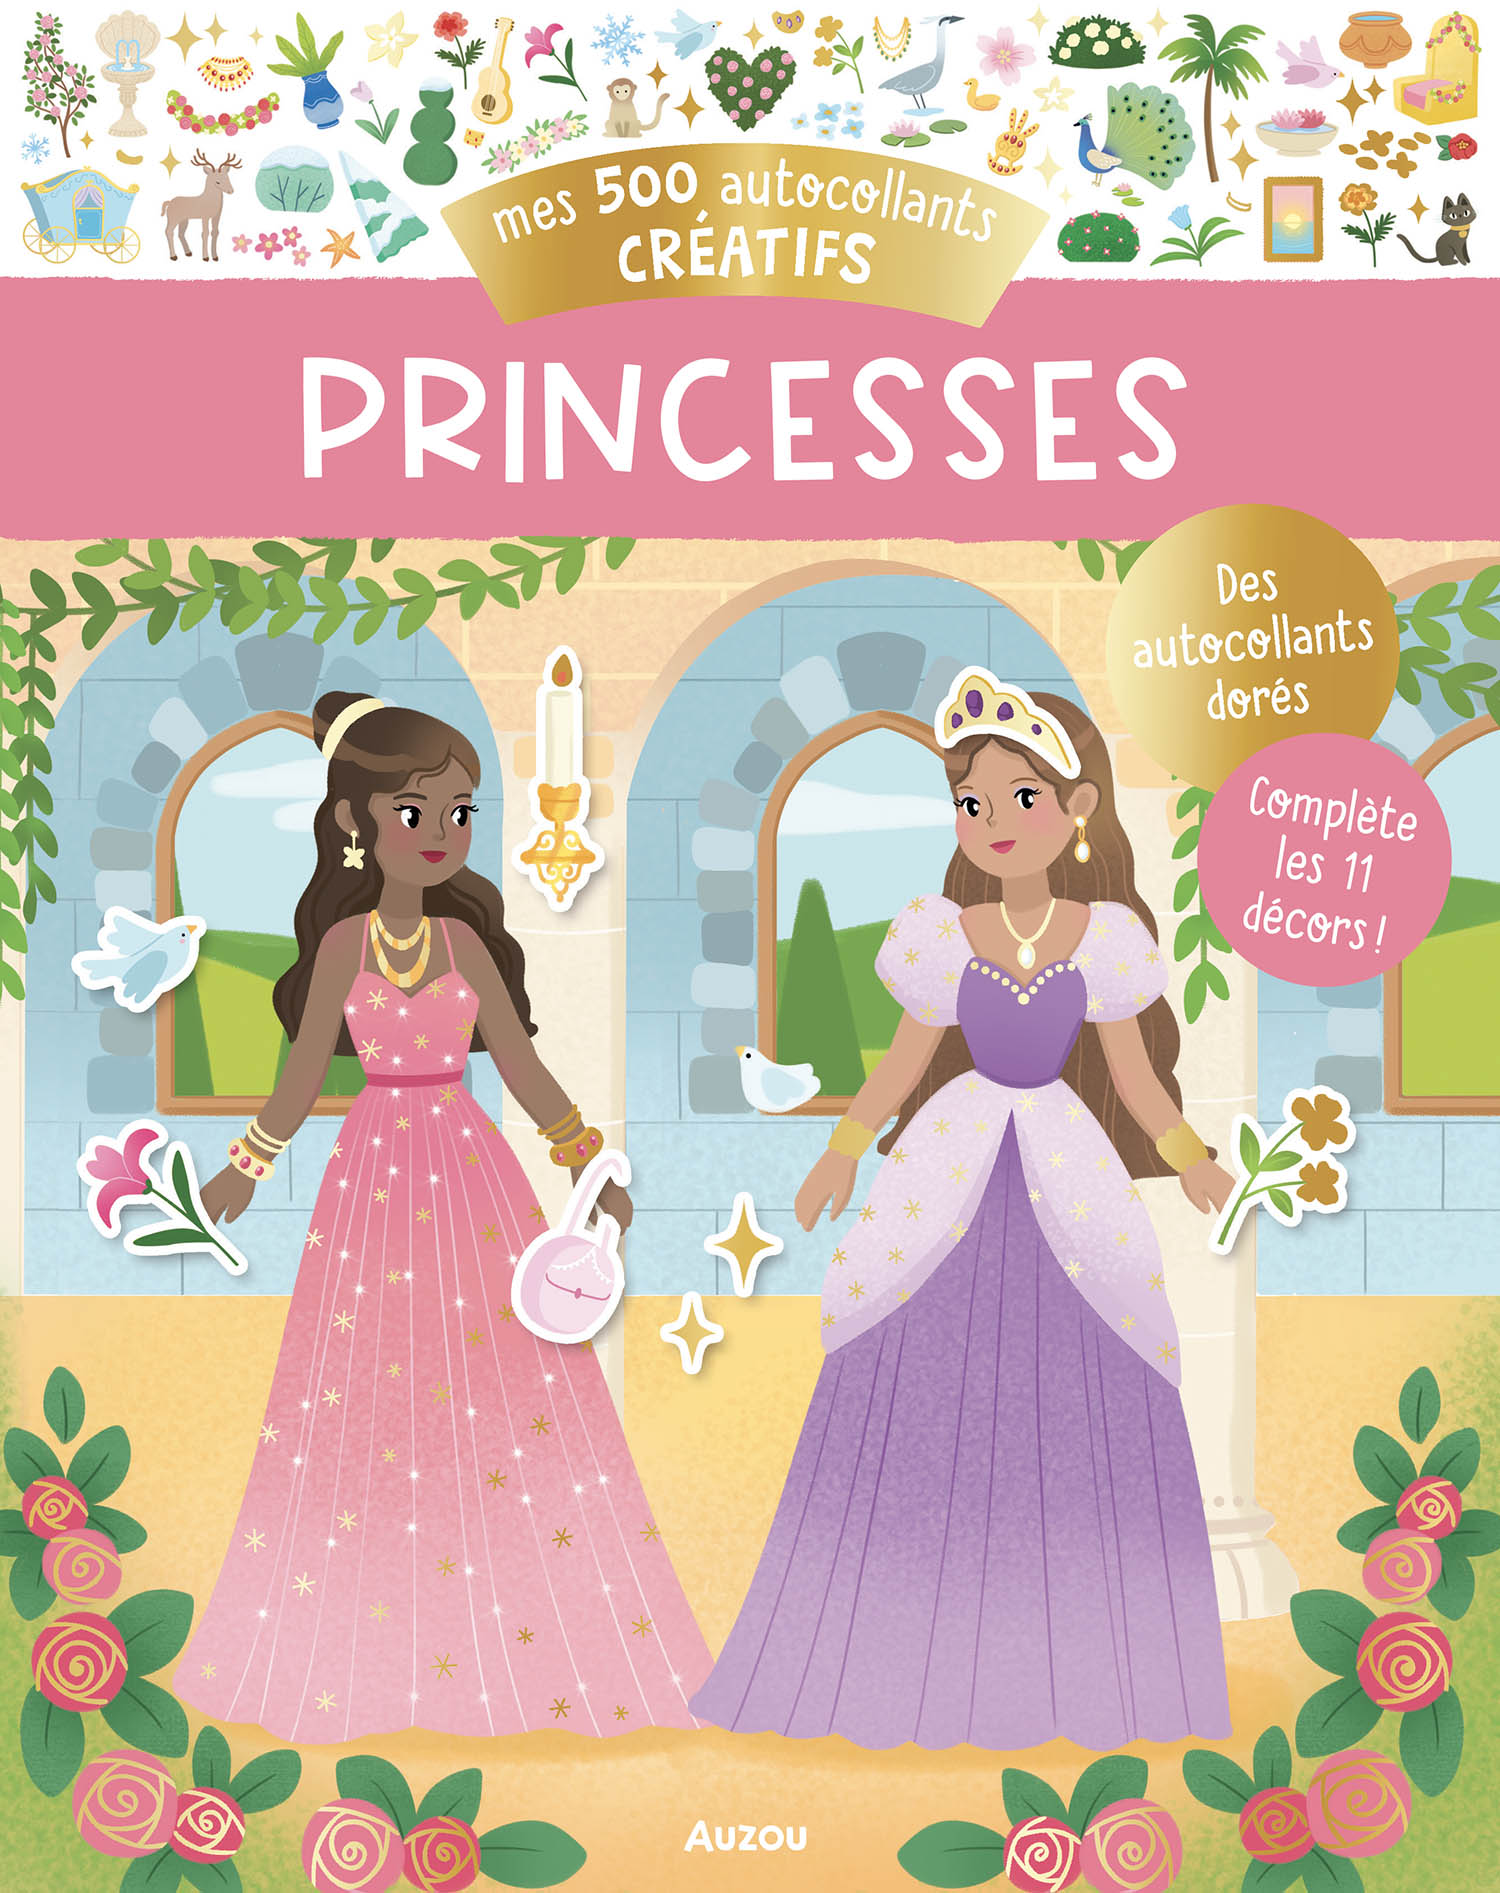 500 Autocollants Créatifs Princesses